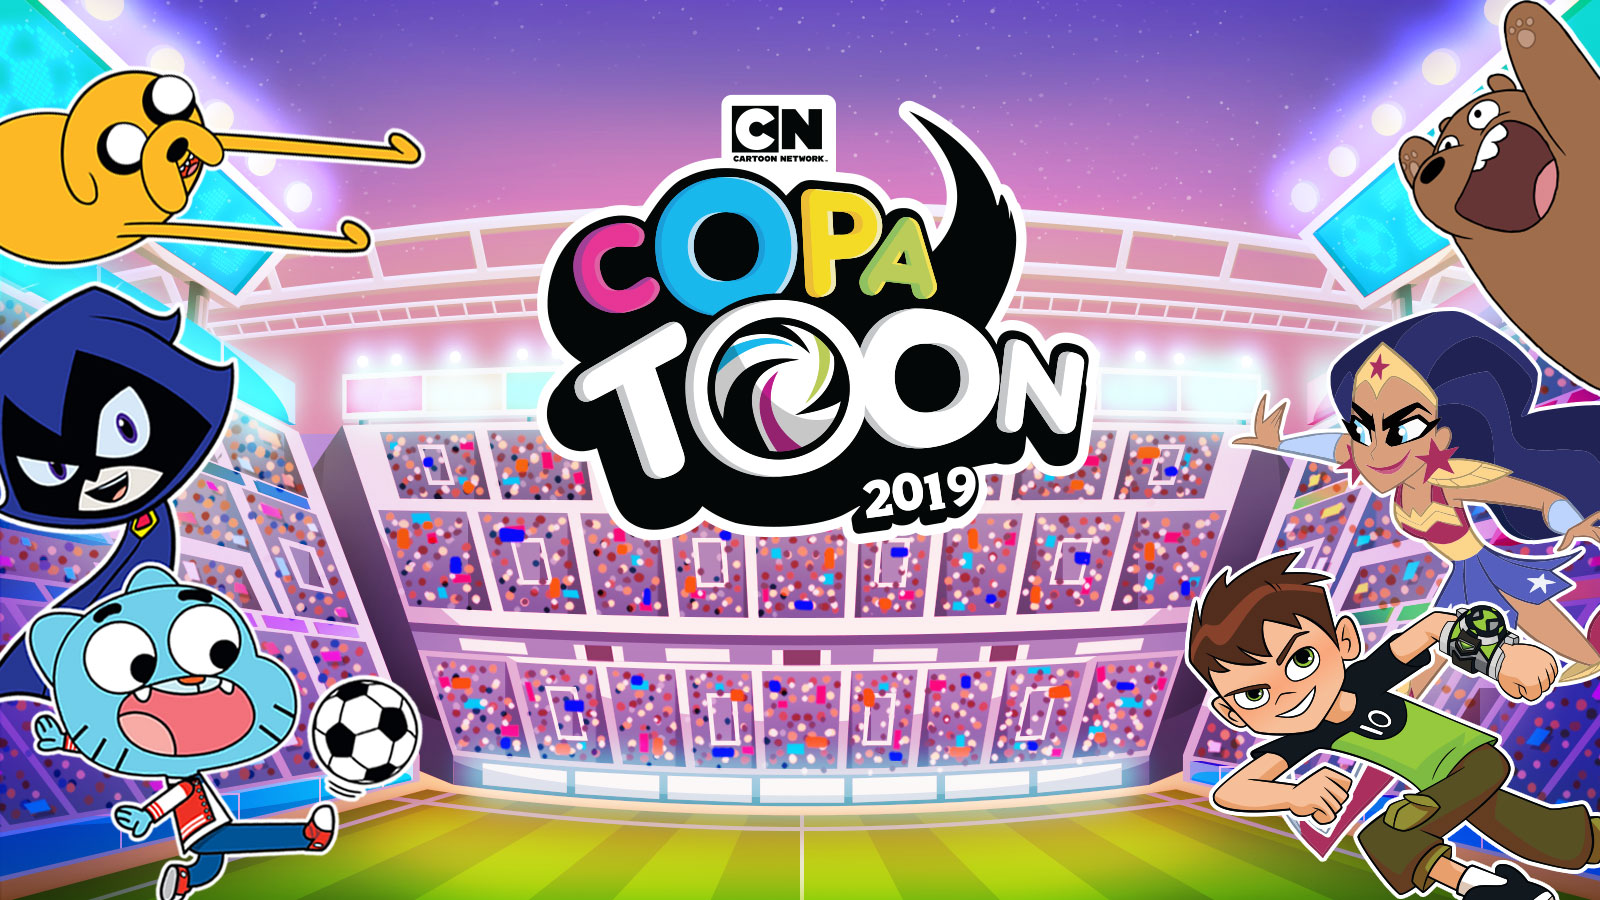 Copa Toon Goleadores El Juego | carfare.me 2019-2020